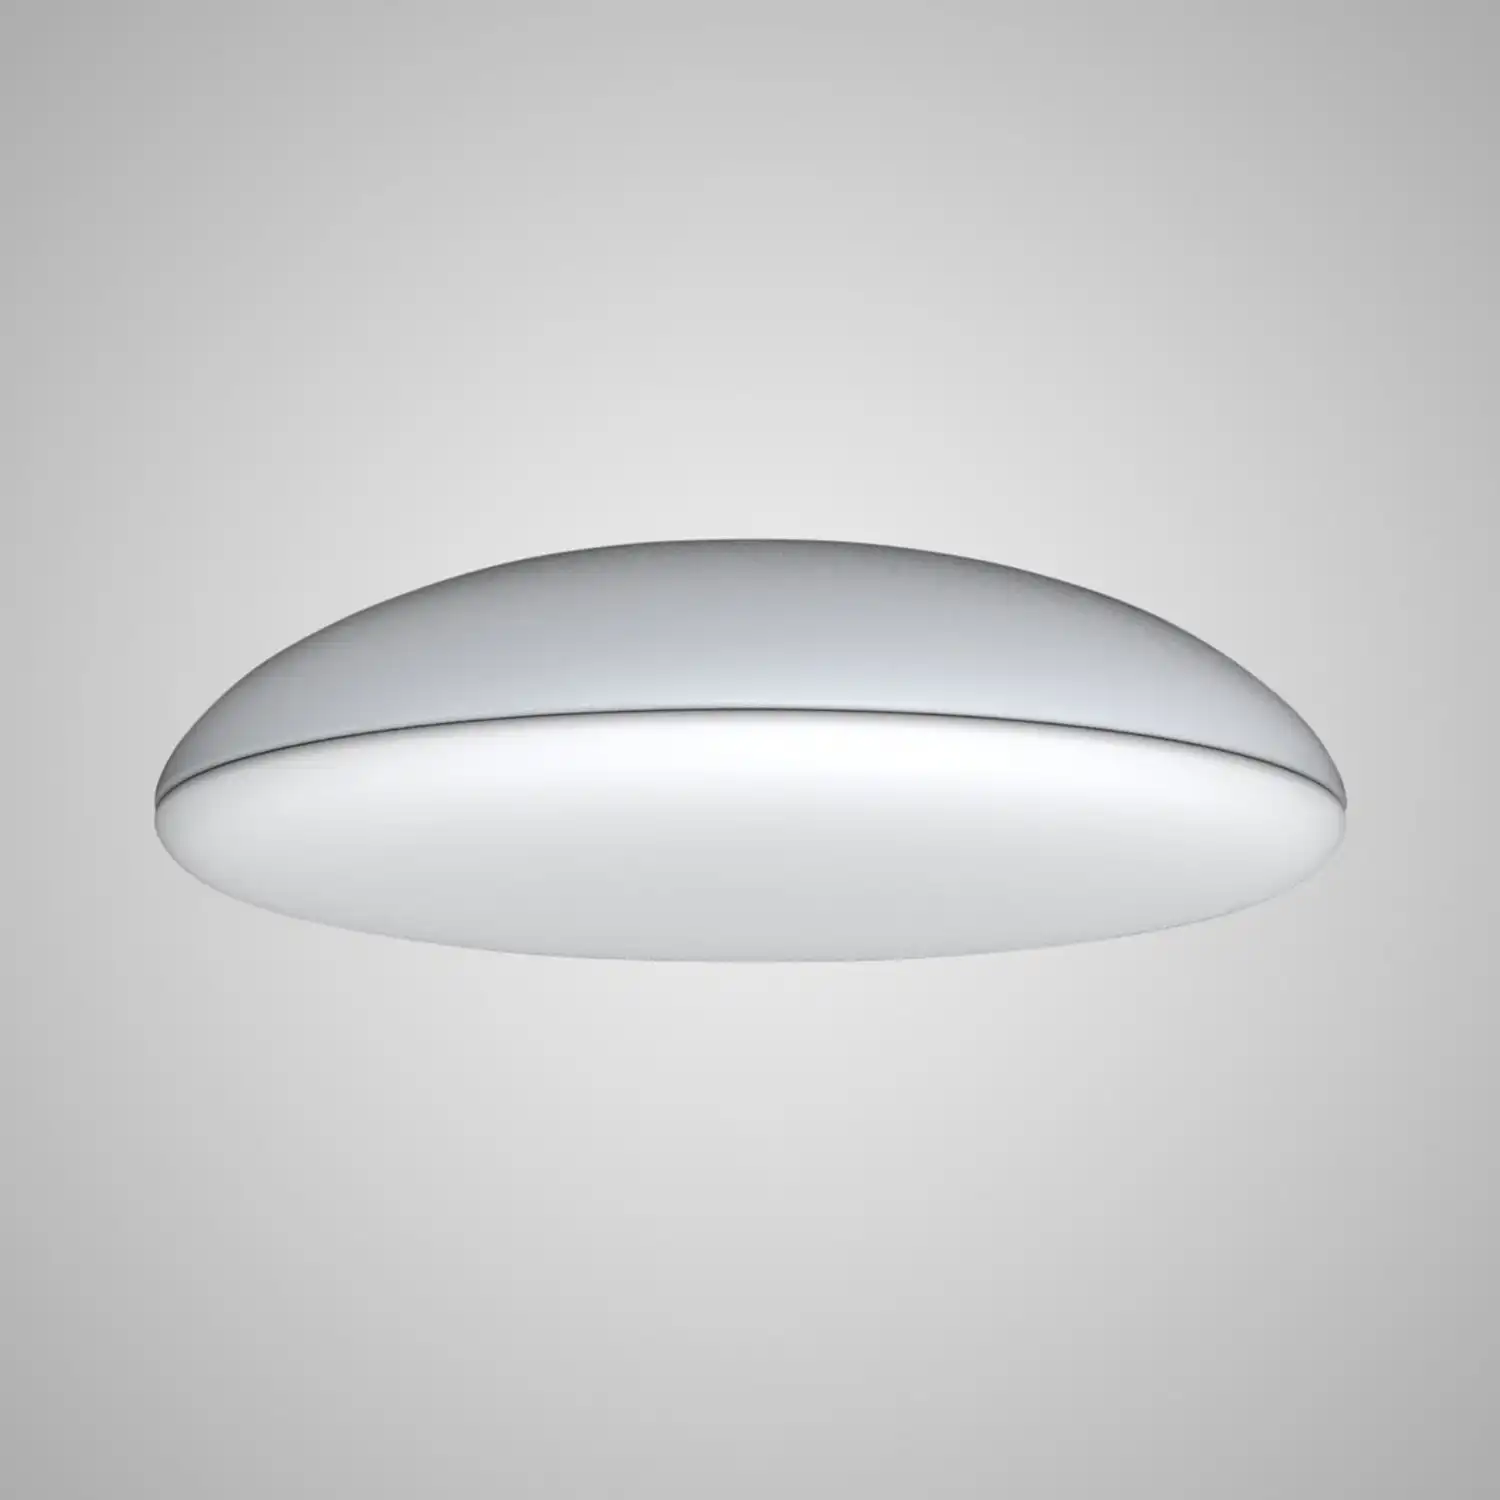 Kazz Ceiling 50cm Round, 6 x E27 (Max 20W LED), White